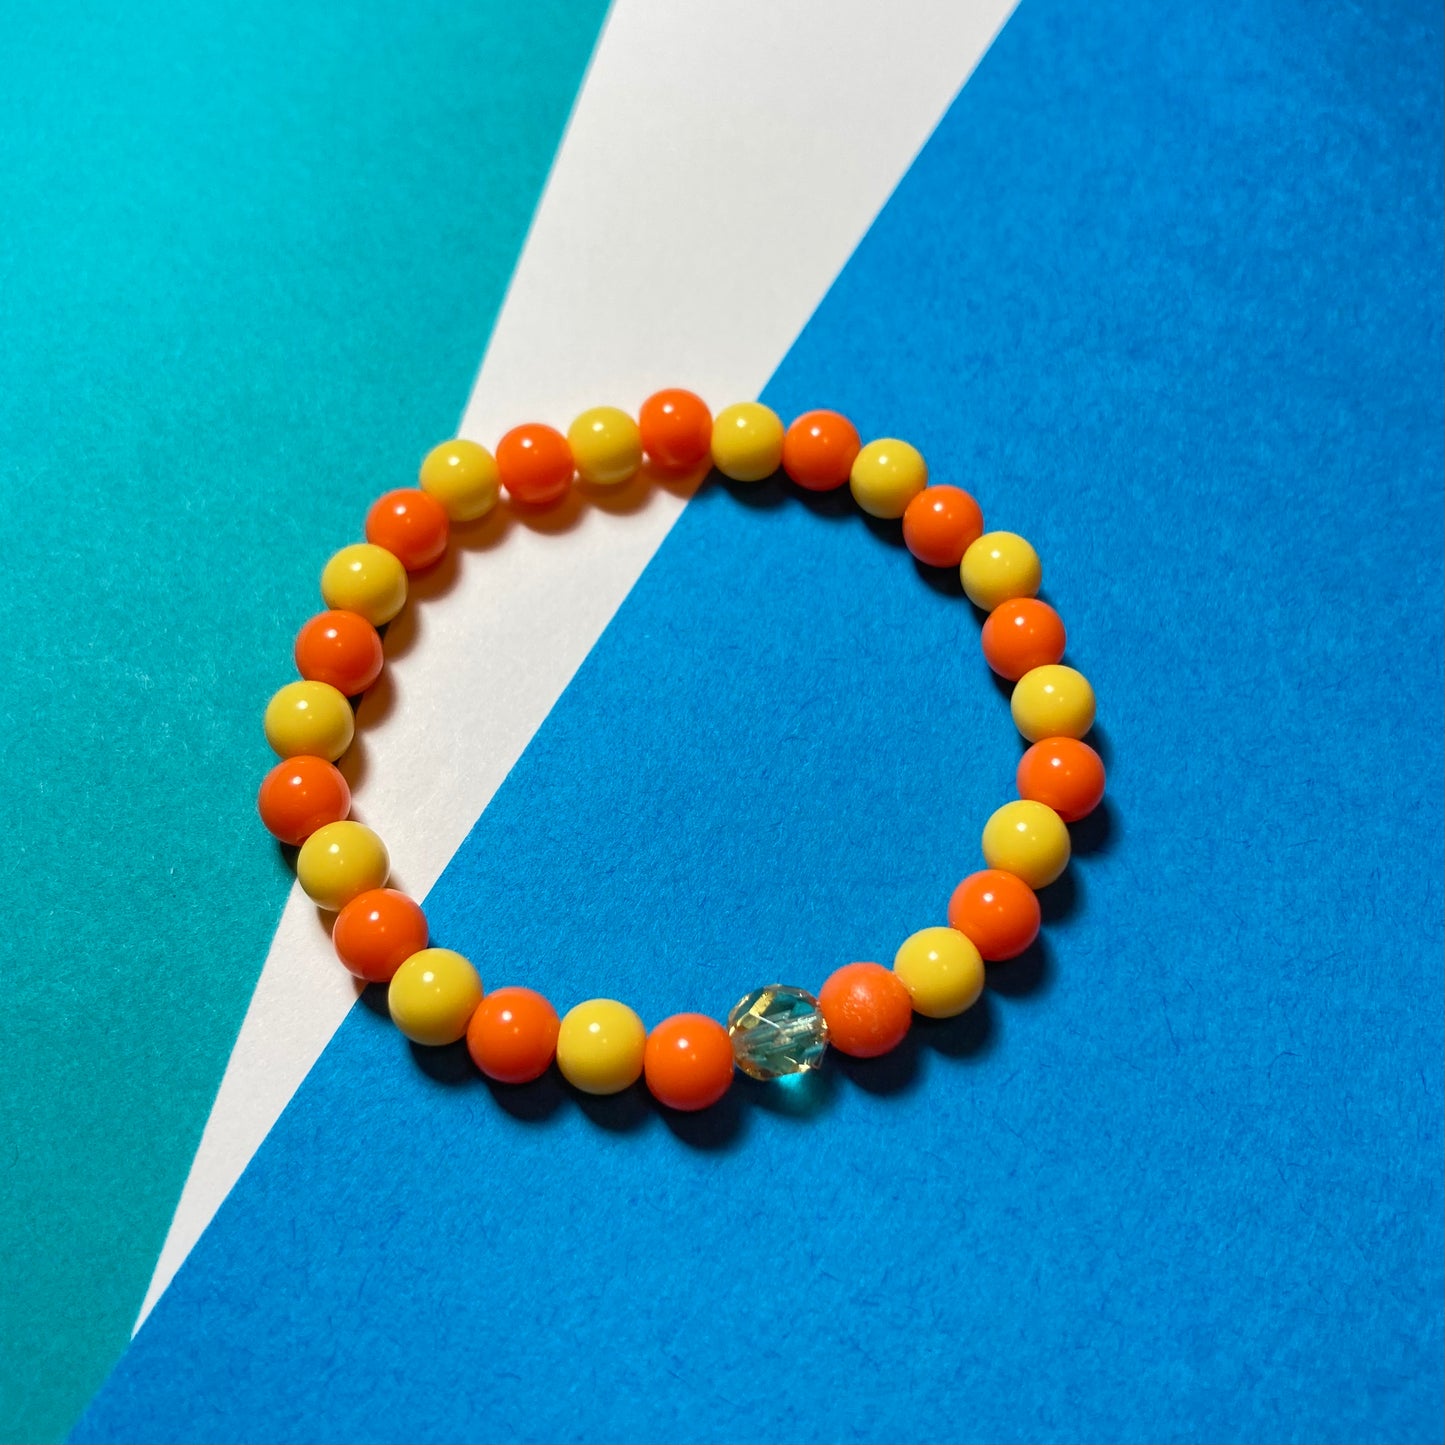 B24-GB4 - Yellow & Orange Stretch Bracelet